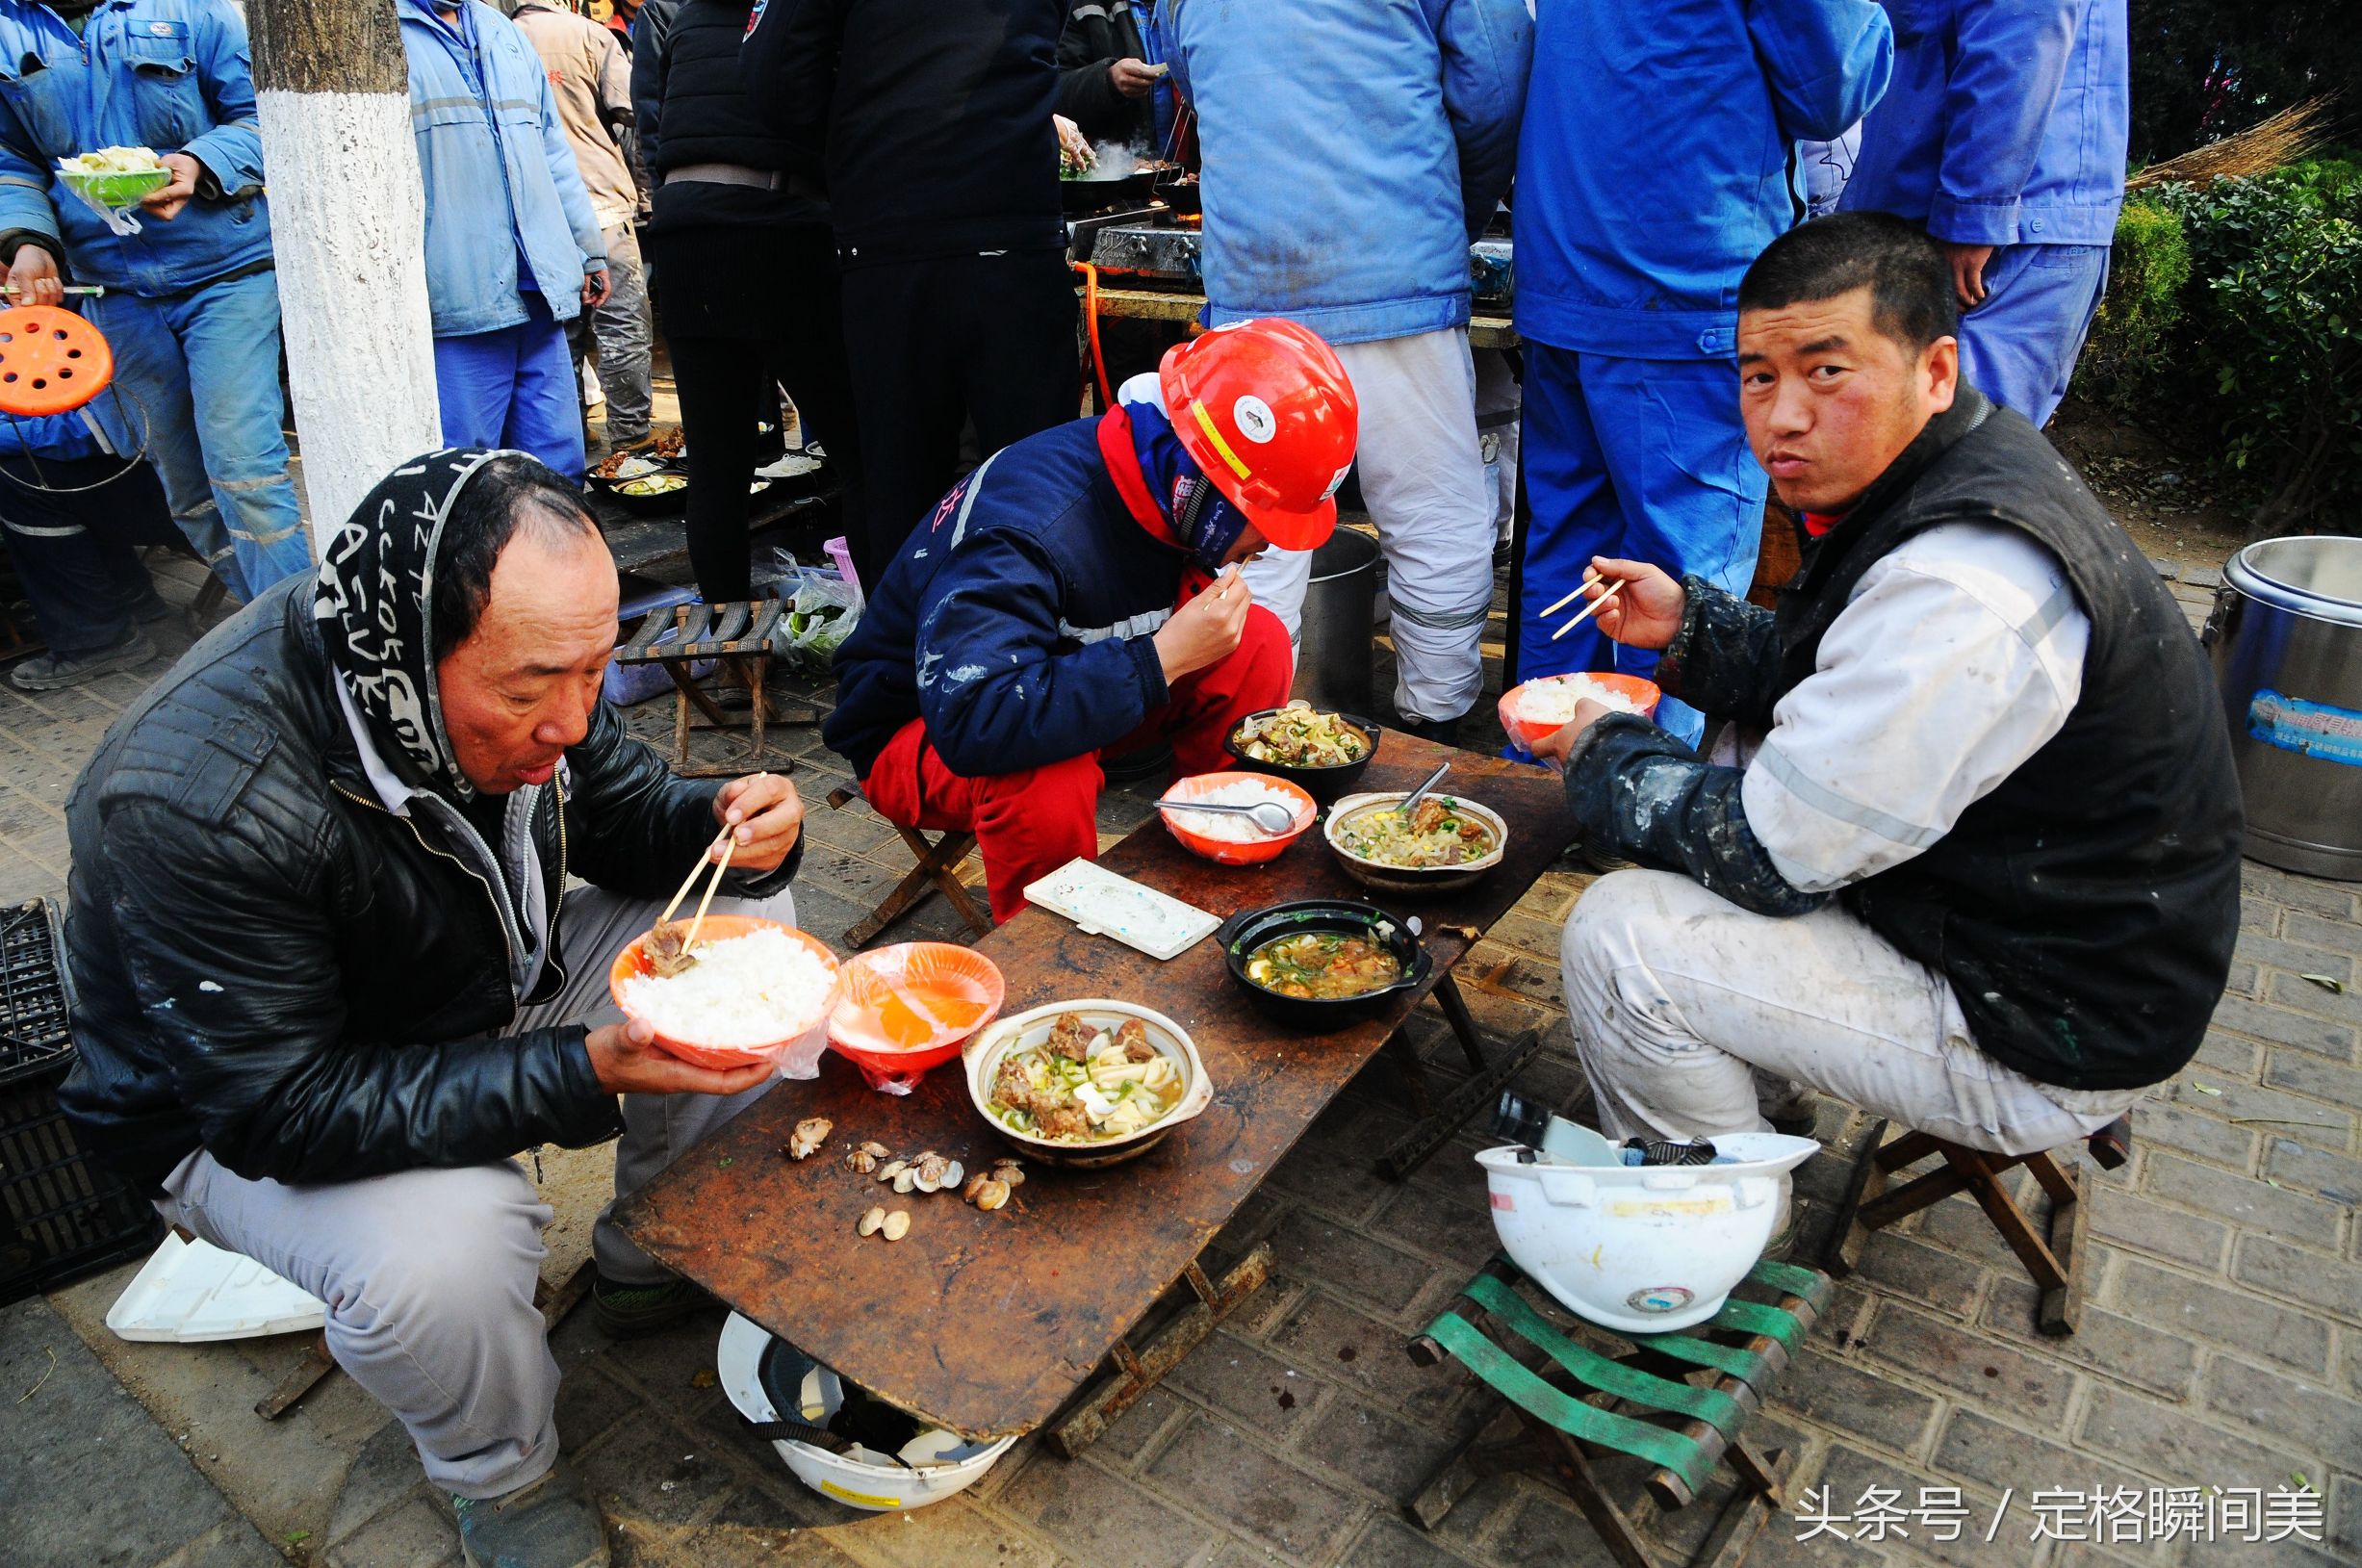 图为:三名师傅在吃饭午餐盒饭.